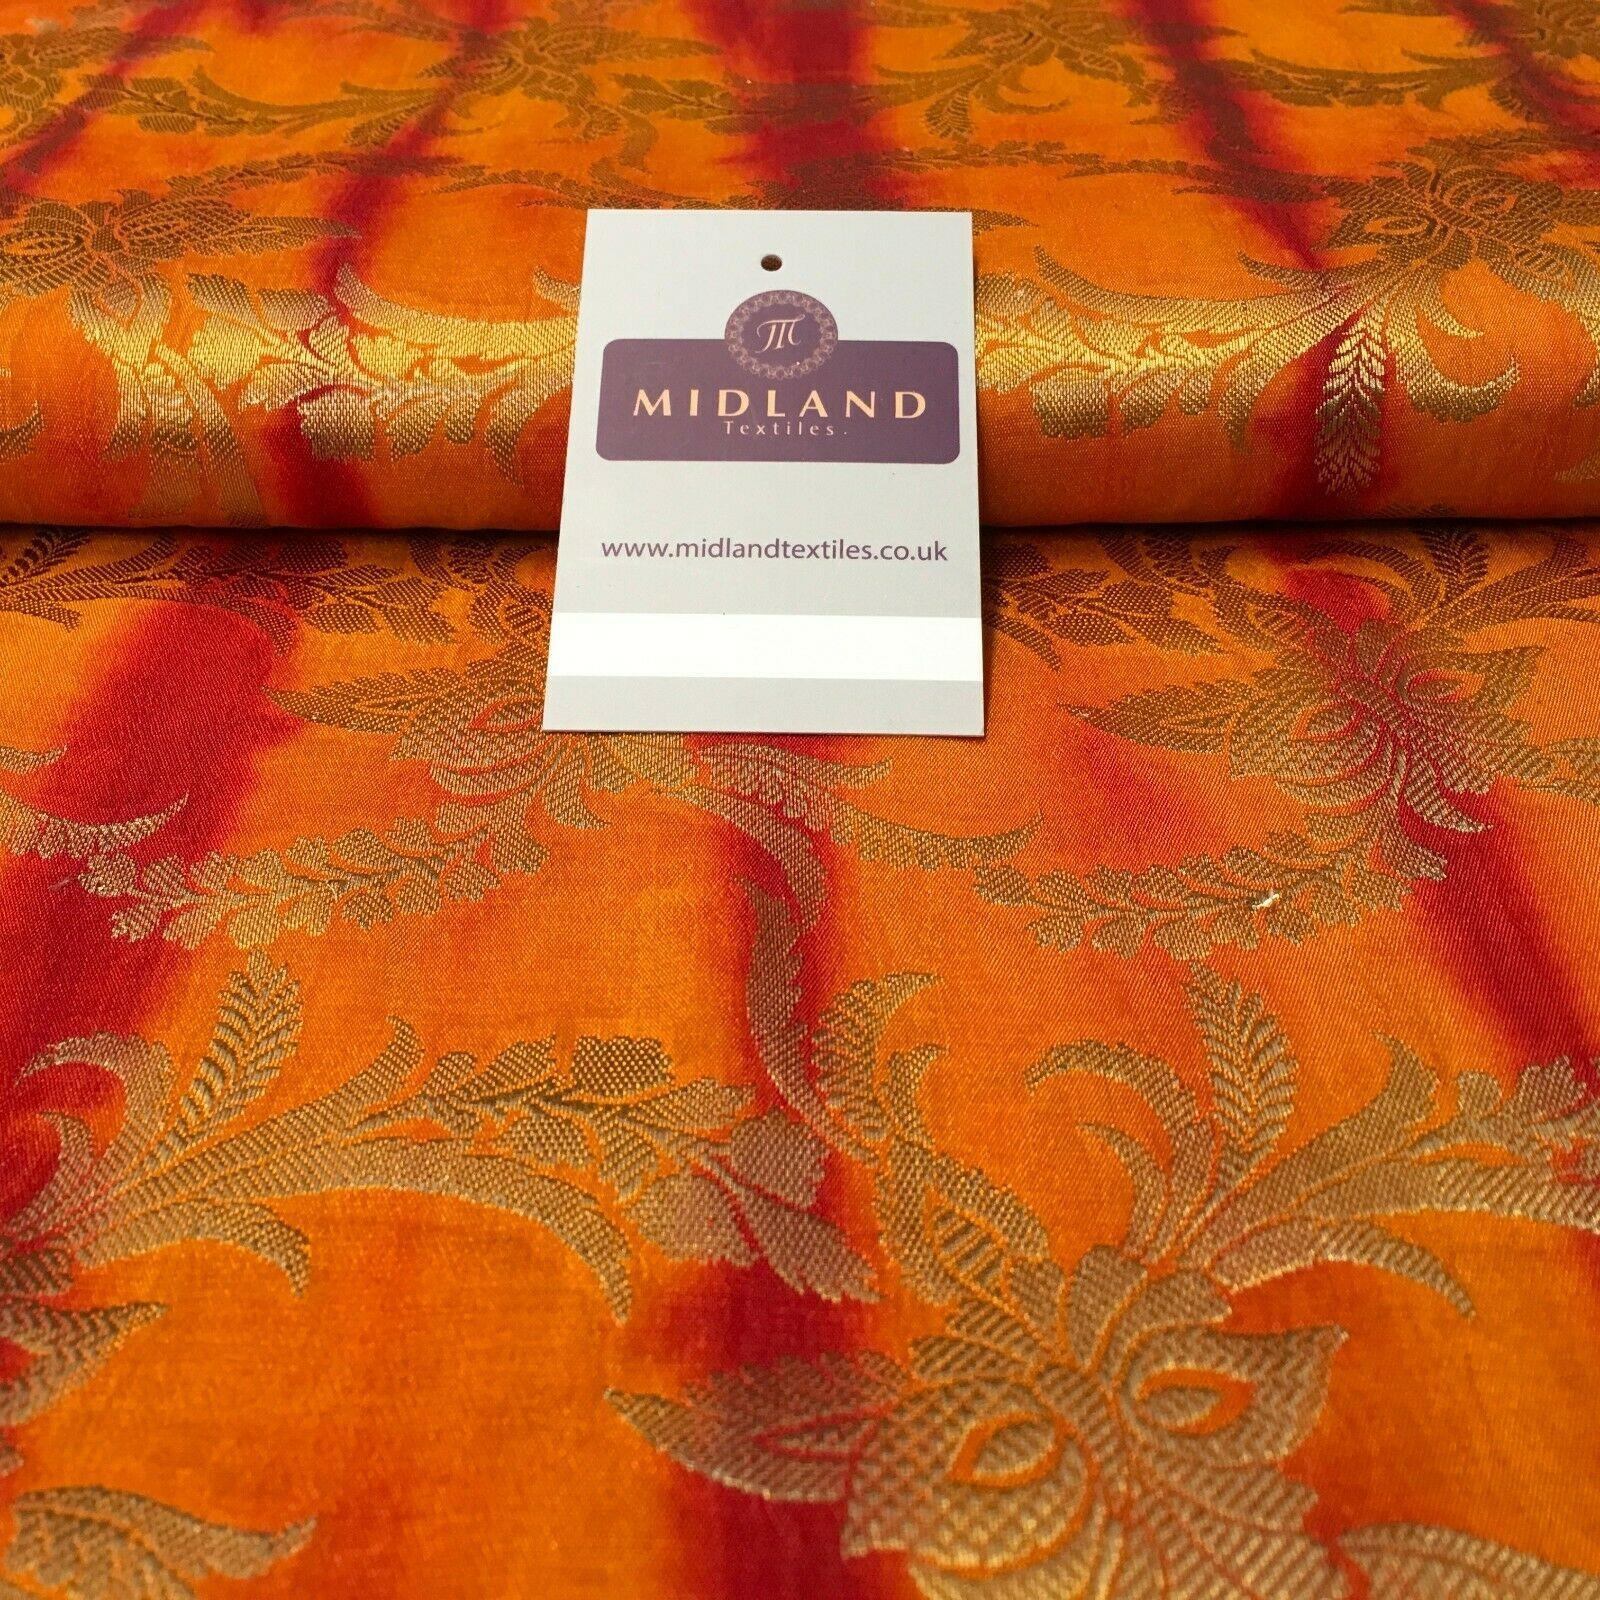 Tessuto broccato di pura seta indiano bicolore Banarsi largo 100 cm MP1105  Mt - Midland Textiles